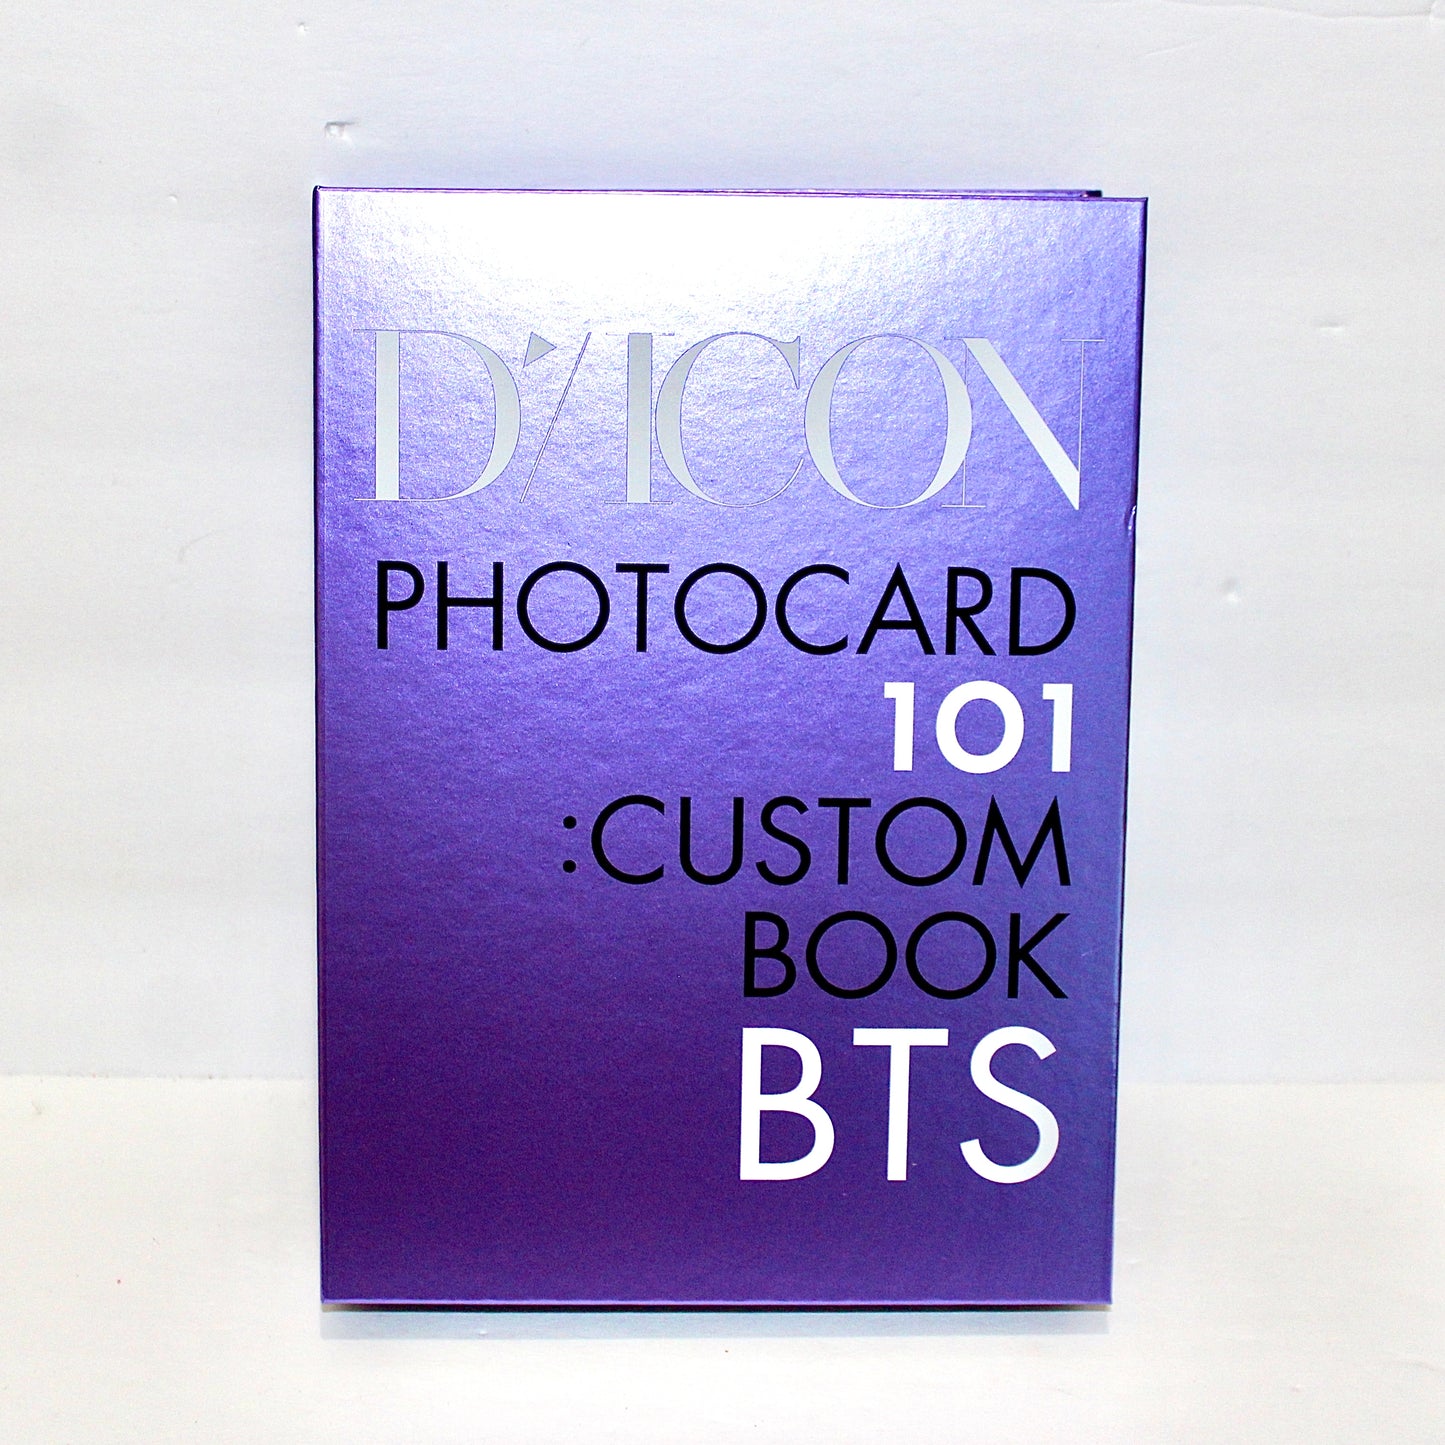 BTS DiCON Photocard 101: Custom Book